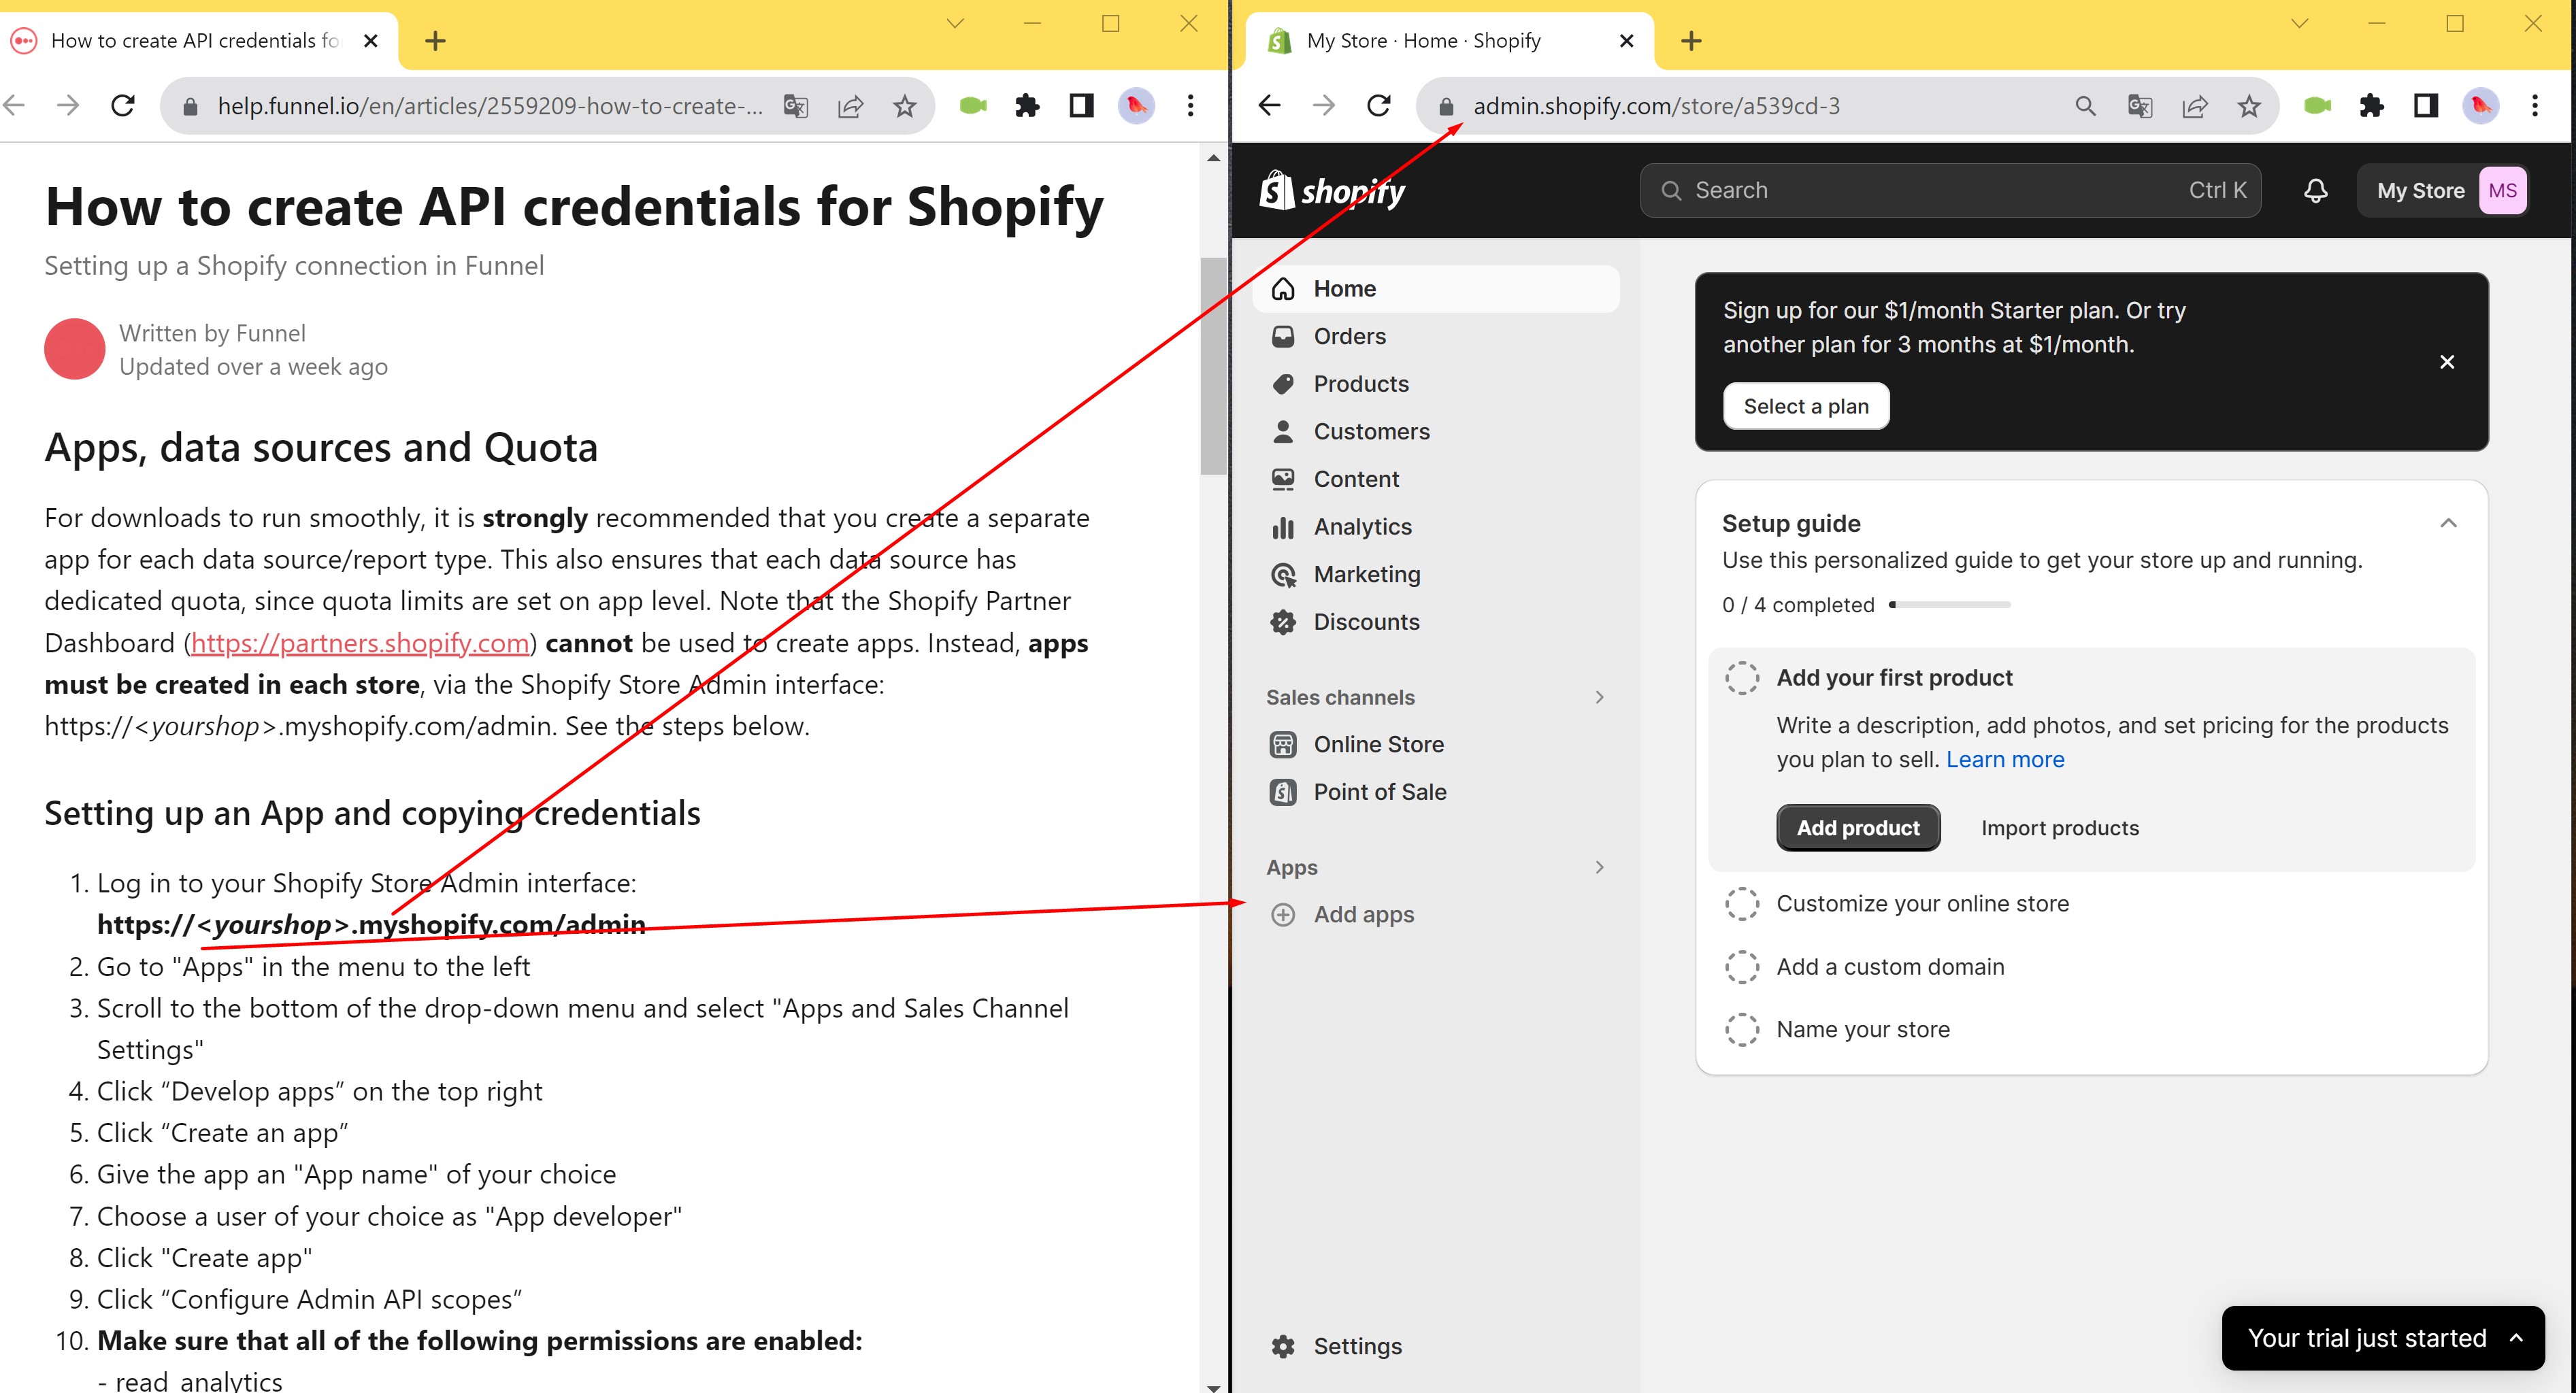 Die Anweisungen auf der Informationsseite stimmen nicht mit der tatsächlichen Shopify-Schnittstelle überein